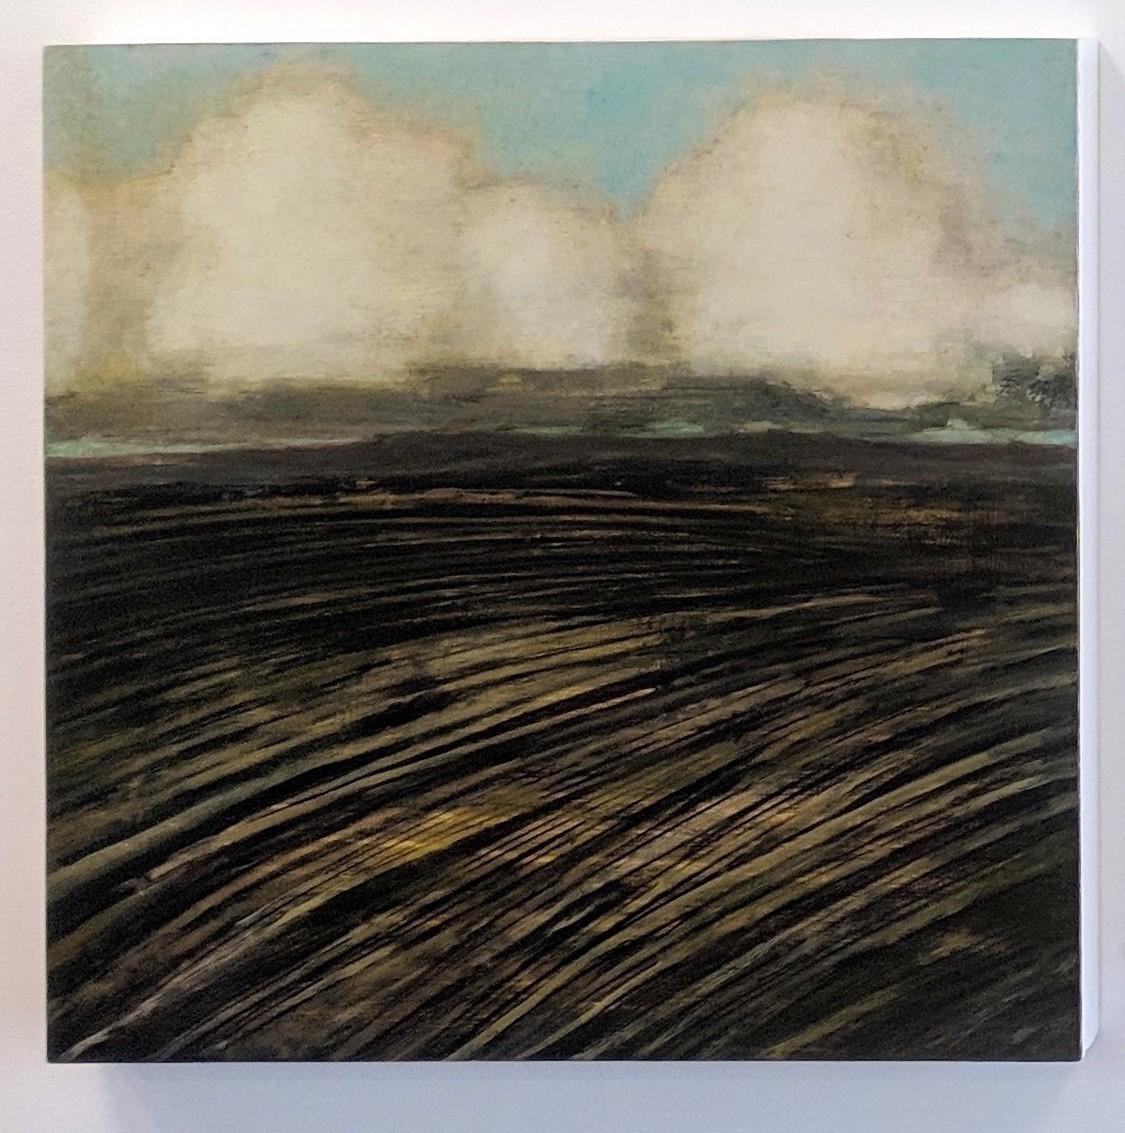 Nouveau champ, peinture de paysage, nuages ivoire, ciel bleu pâle, terrain brun - Painting de David Konigsberg